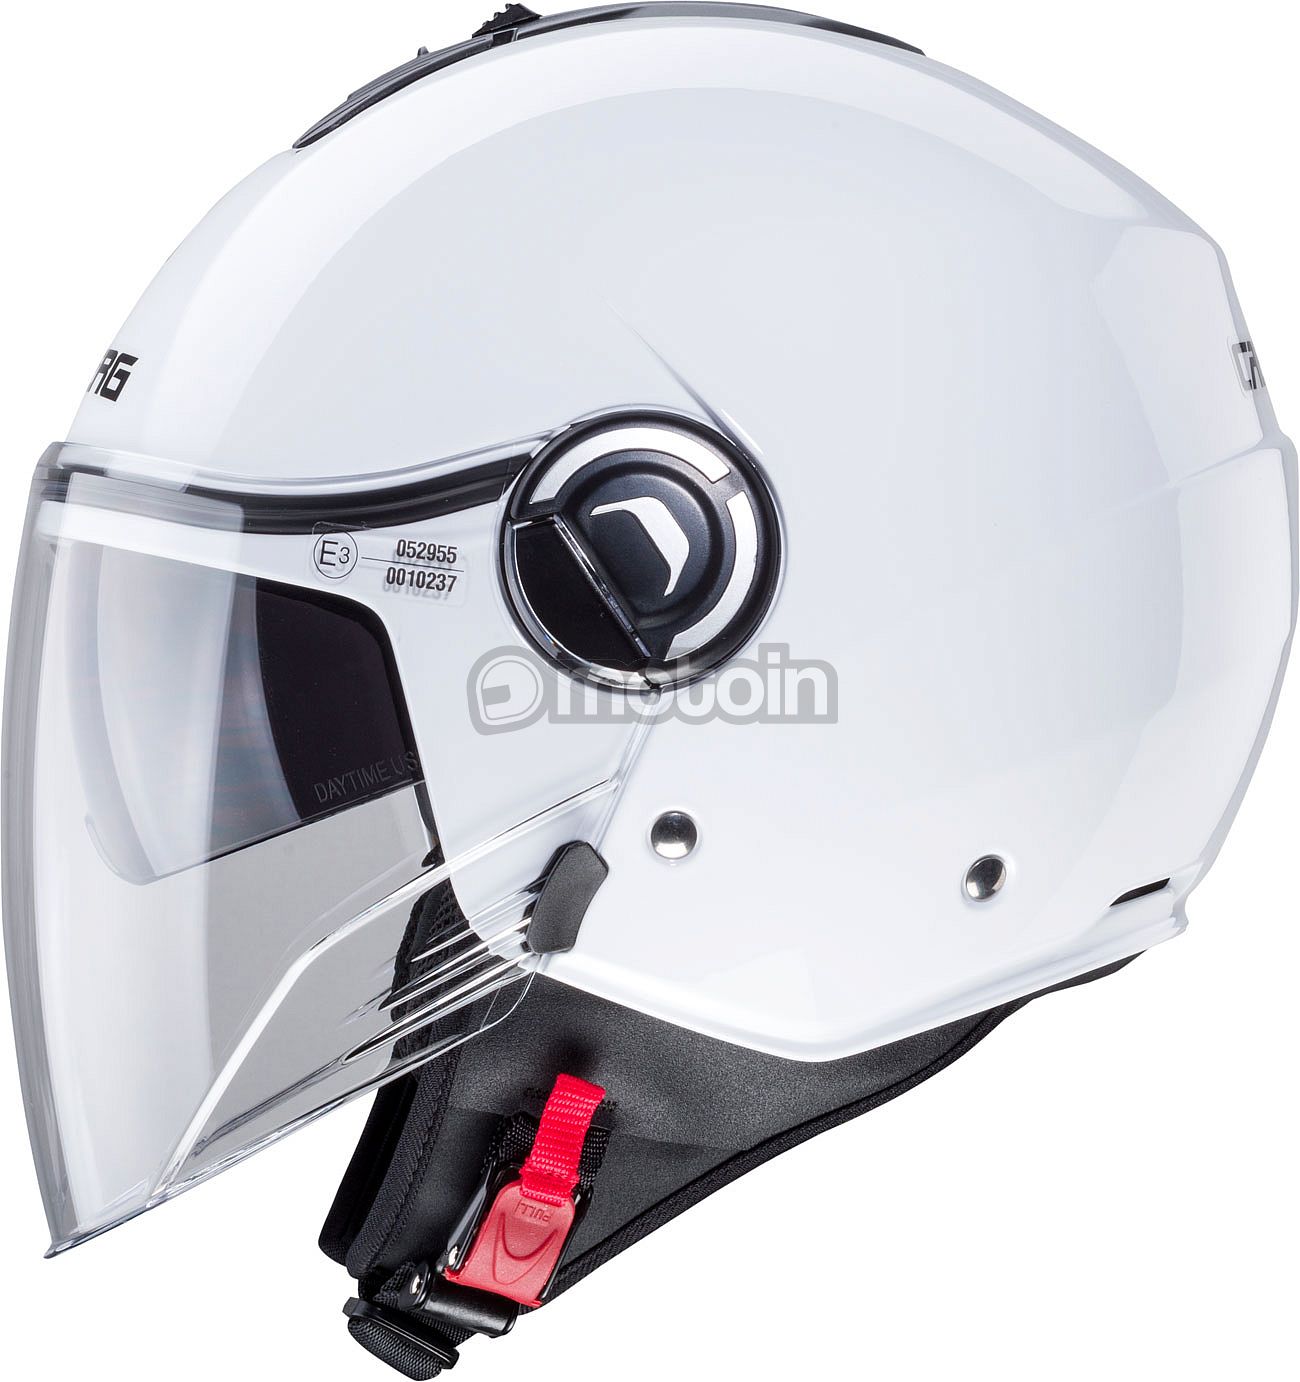 Caberg Riviera V4 X, реактивный шлем